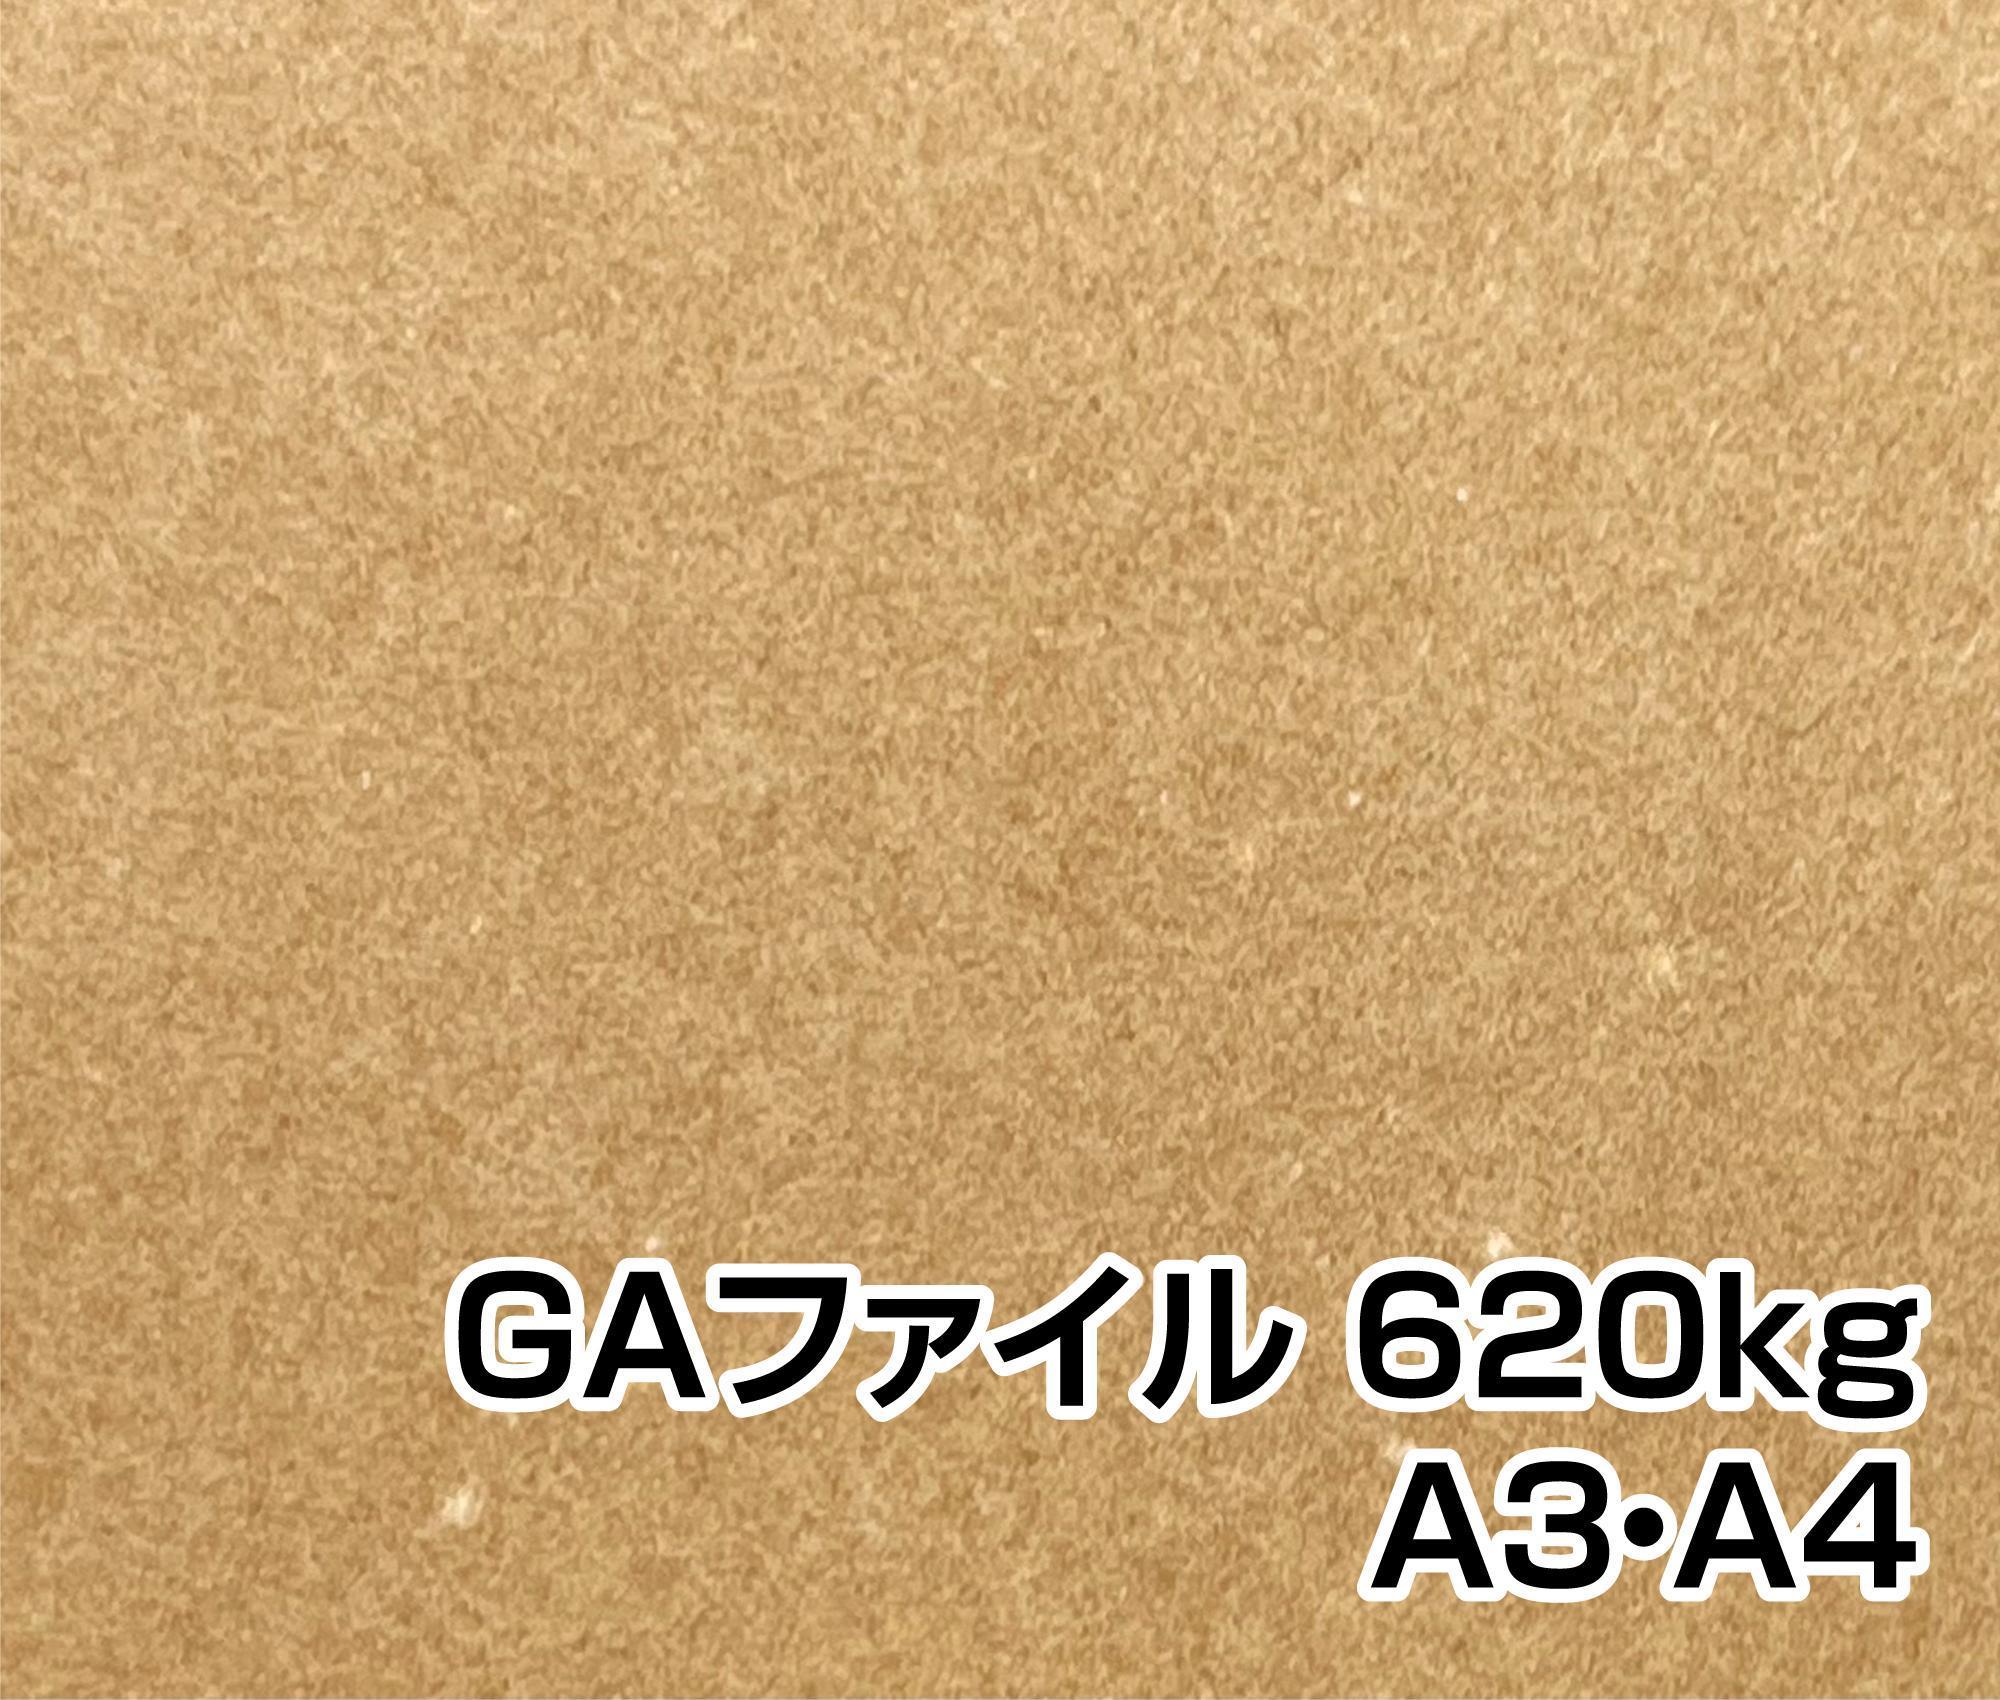 GAファイル 620kg A3・A4・B4・B5